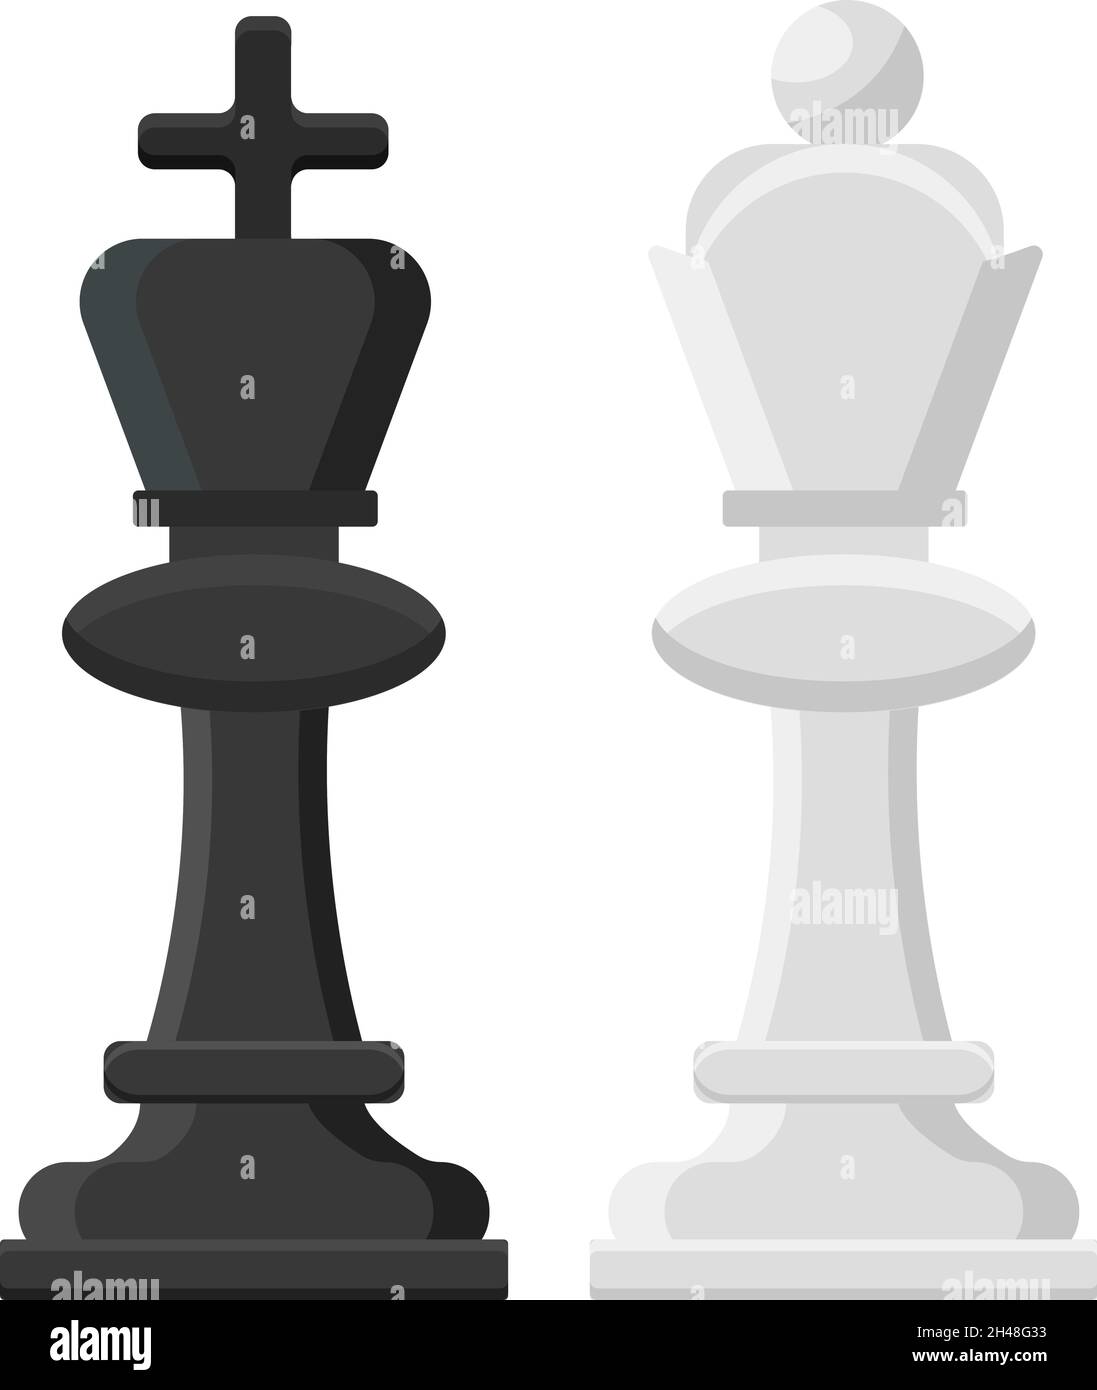 Schachkönig und -Königin, Illustration, Vektor auf weißem Hintergrund. Stock Vektor